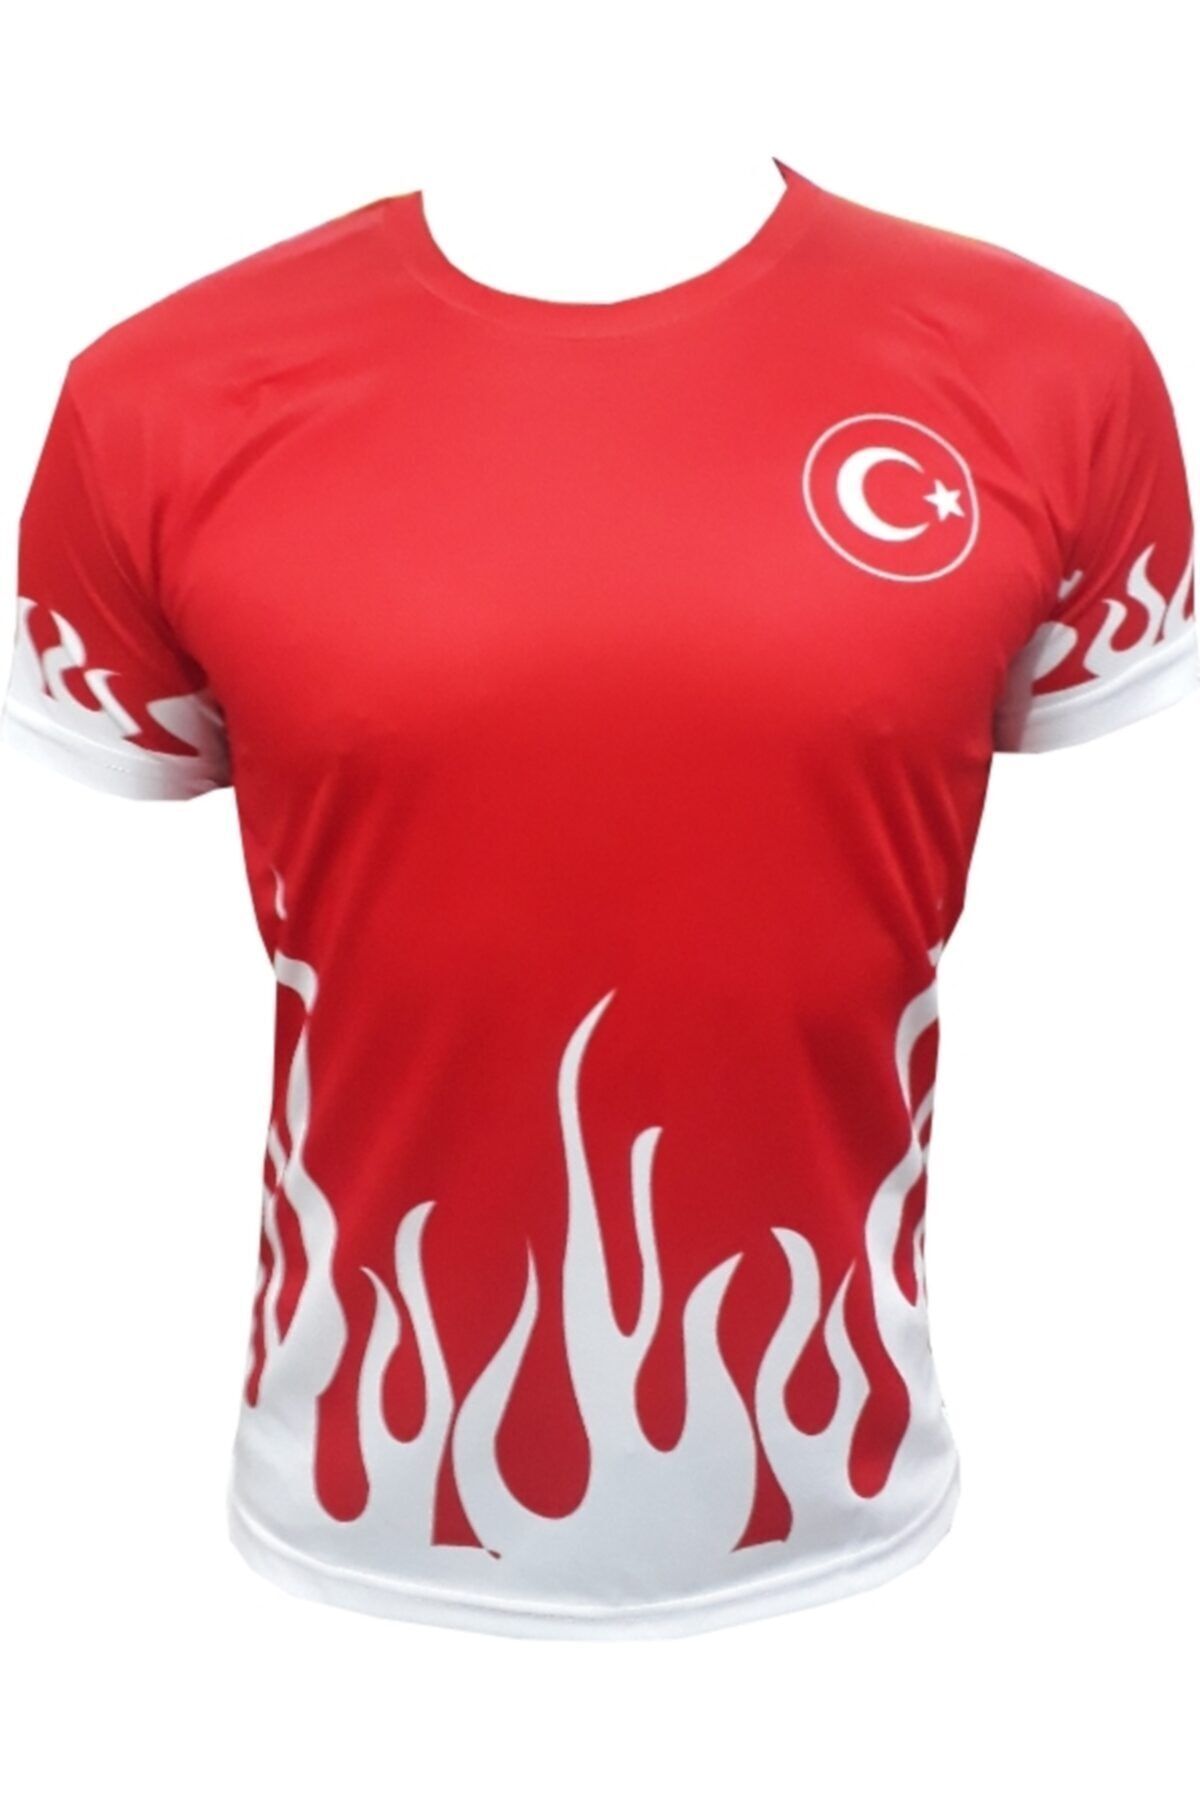 YiğitSpor Unisex Türkiye Milli Takım T-shirt